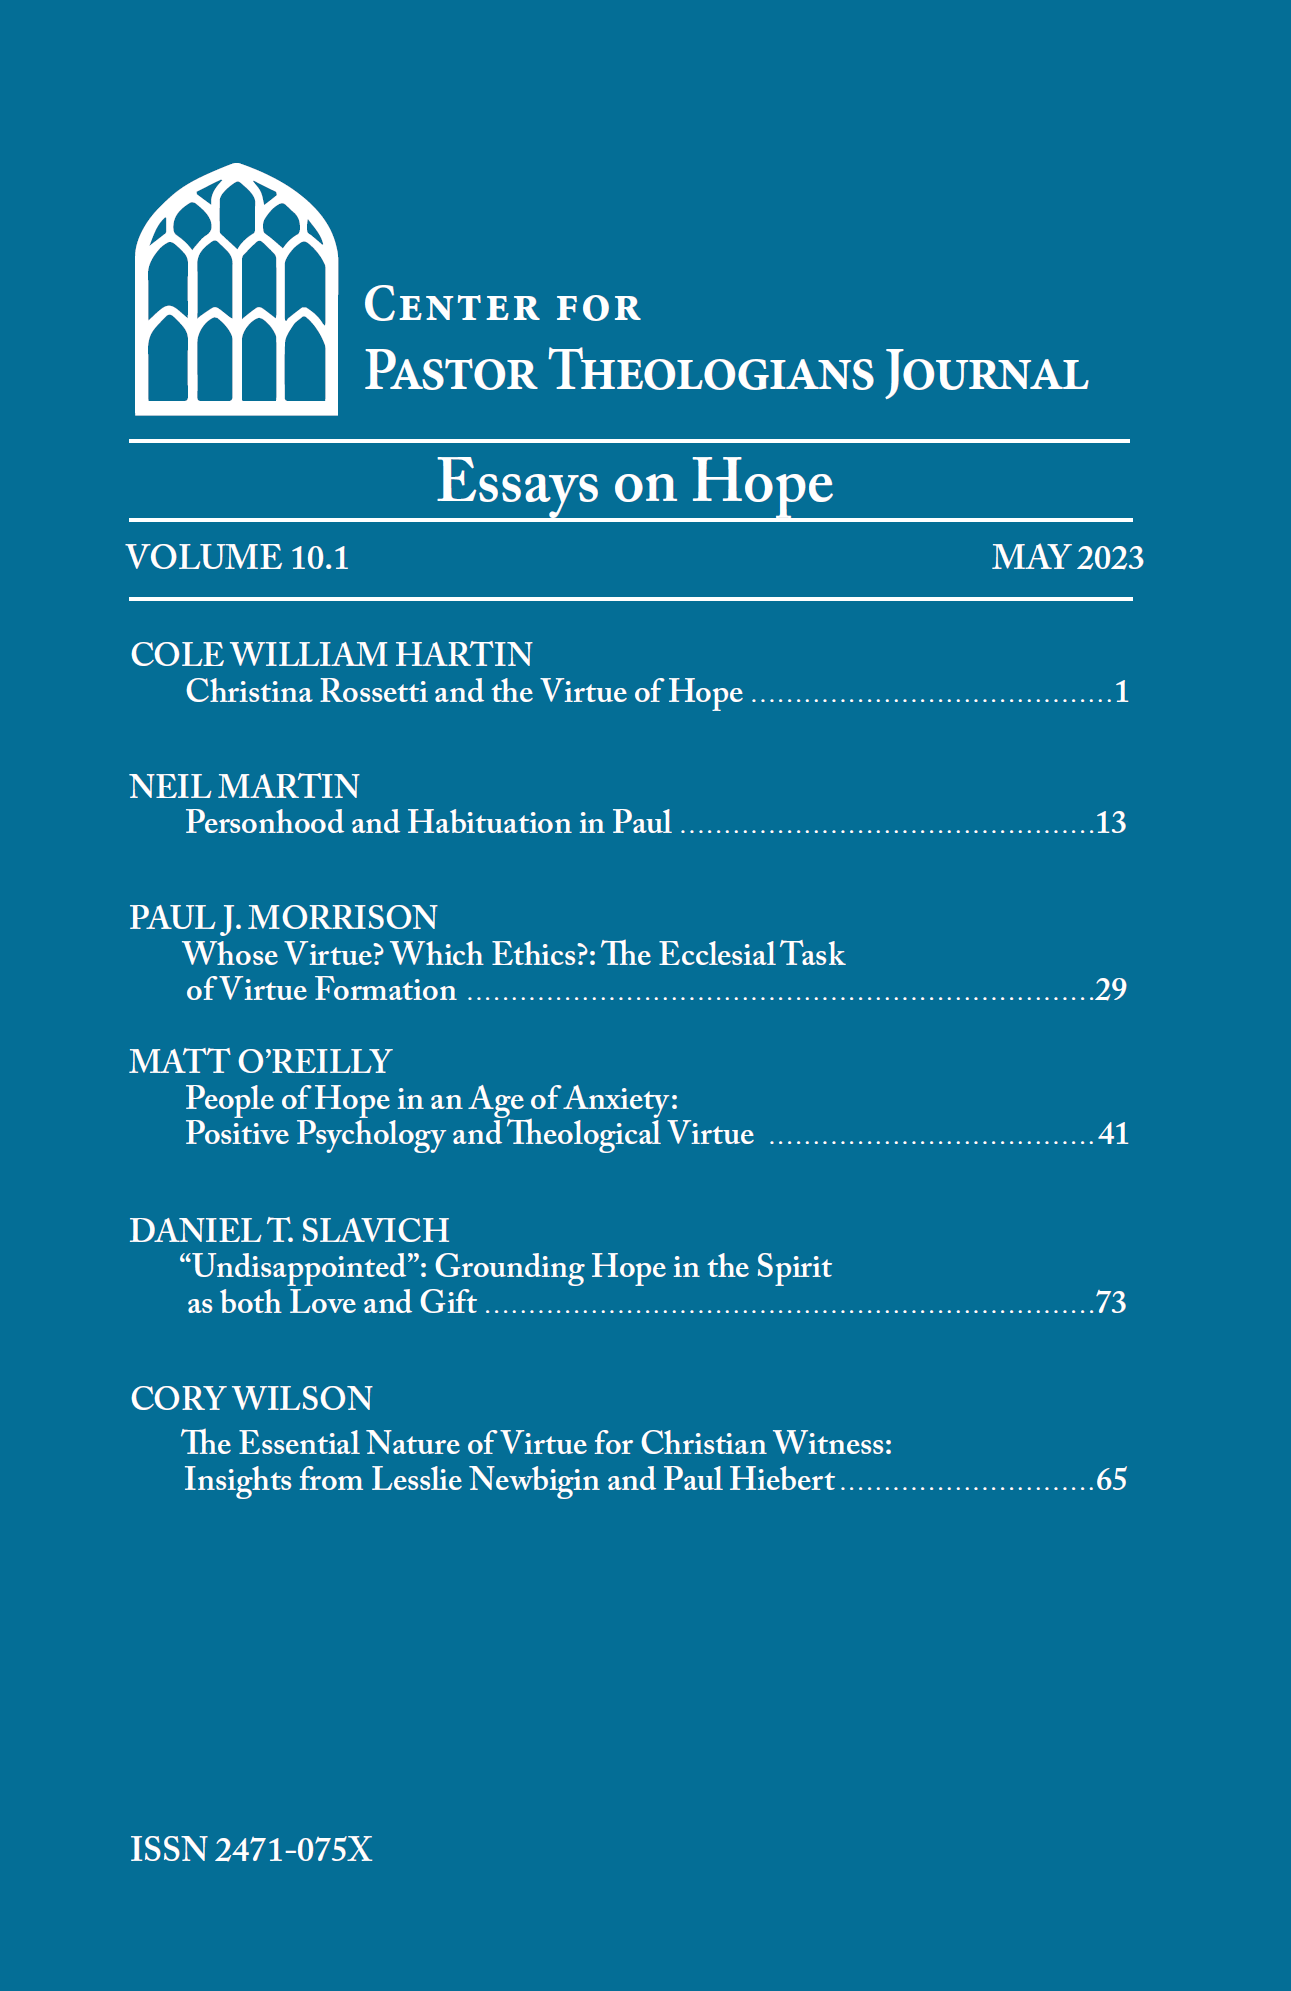 Center for Pastor Theologians Journal 10.1